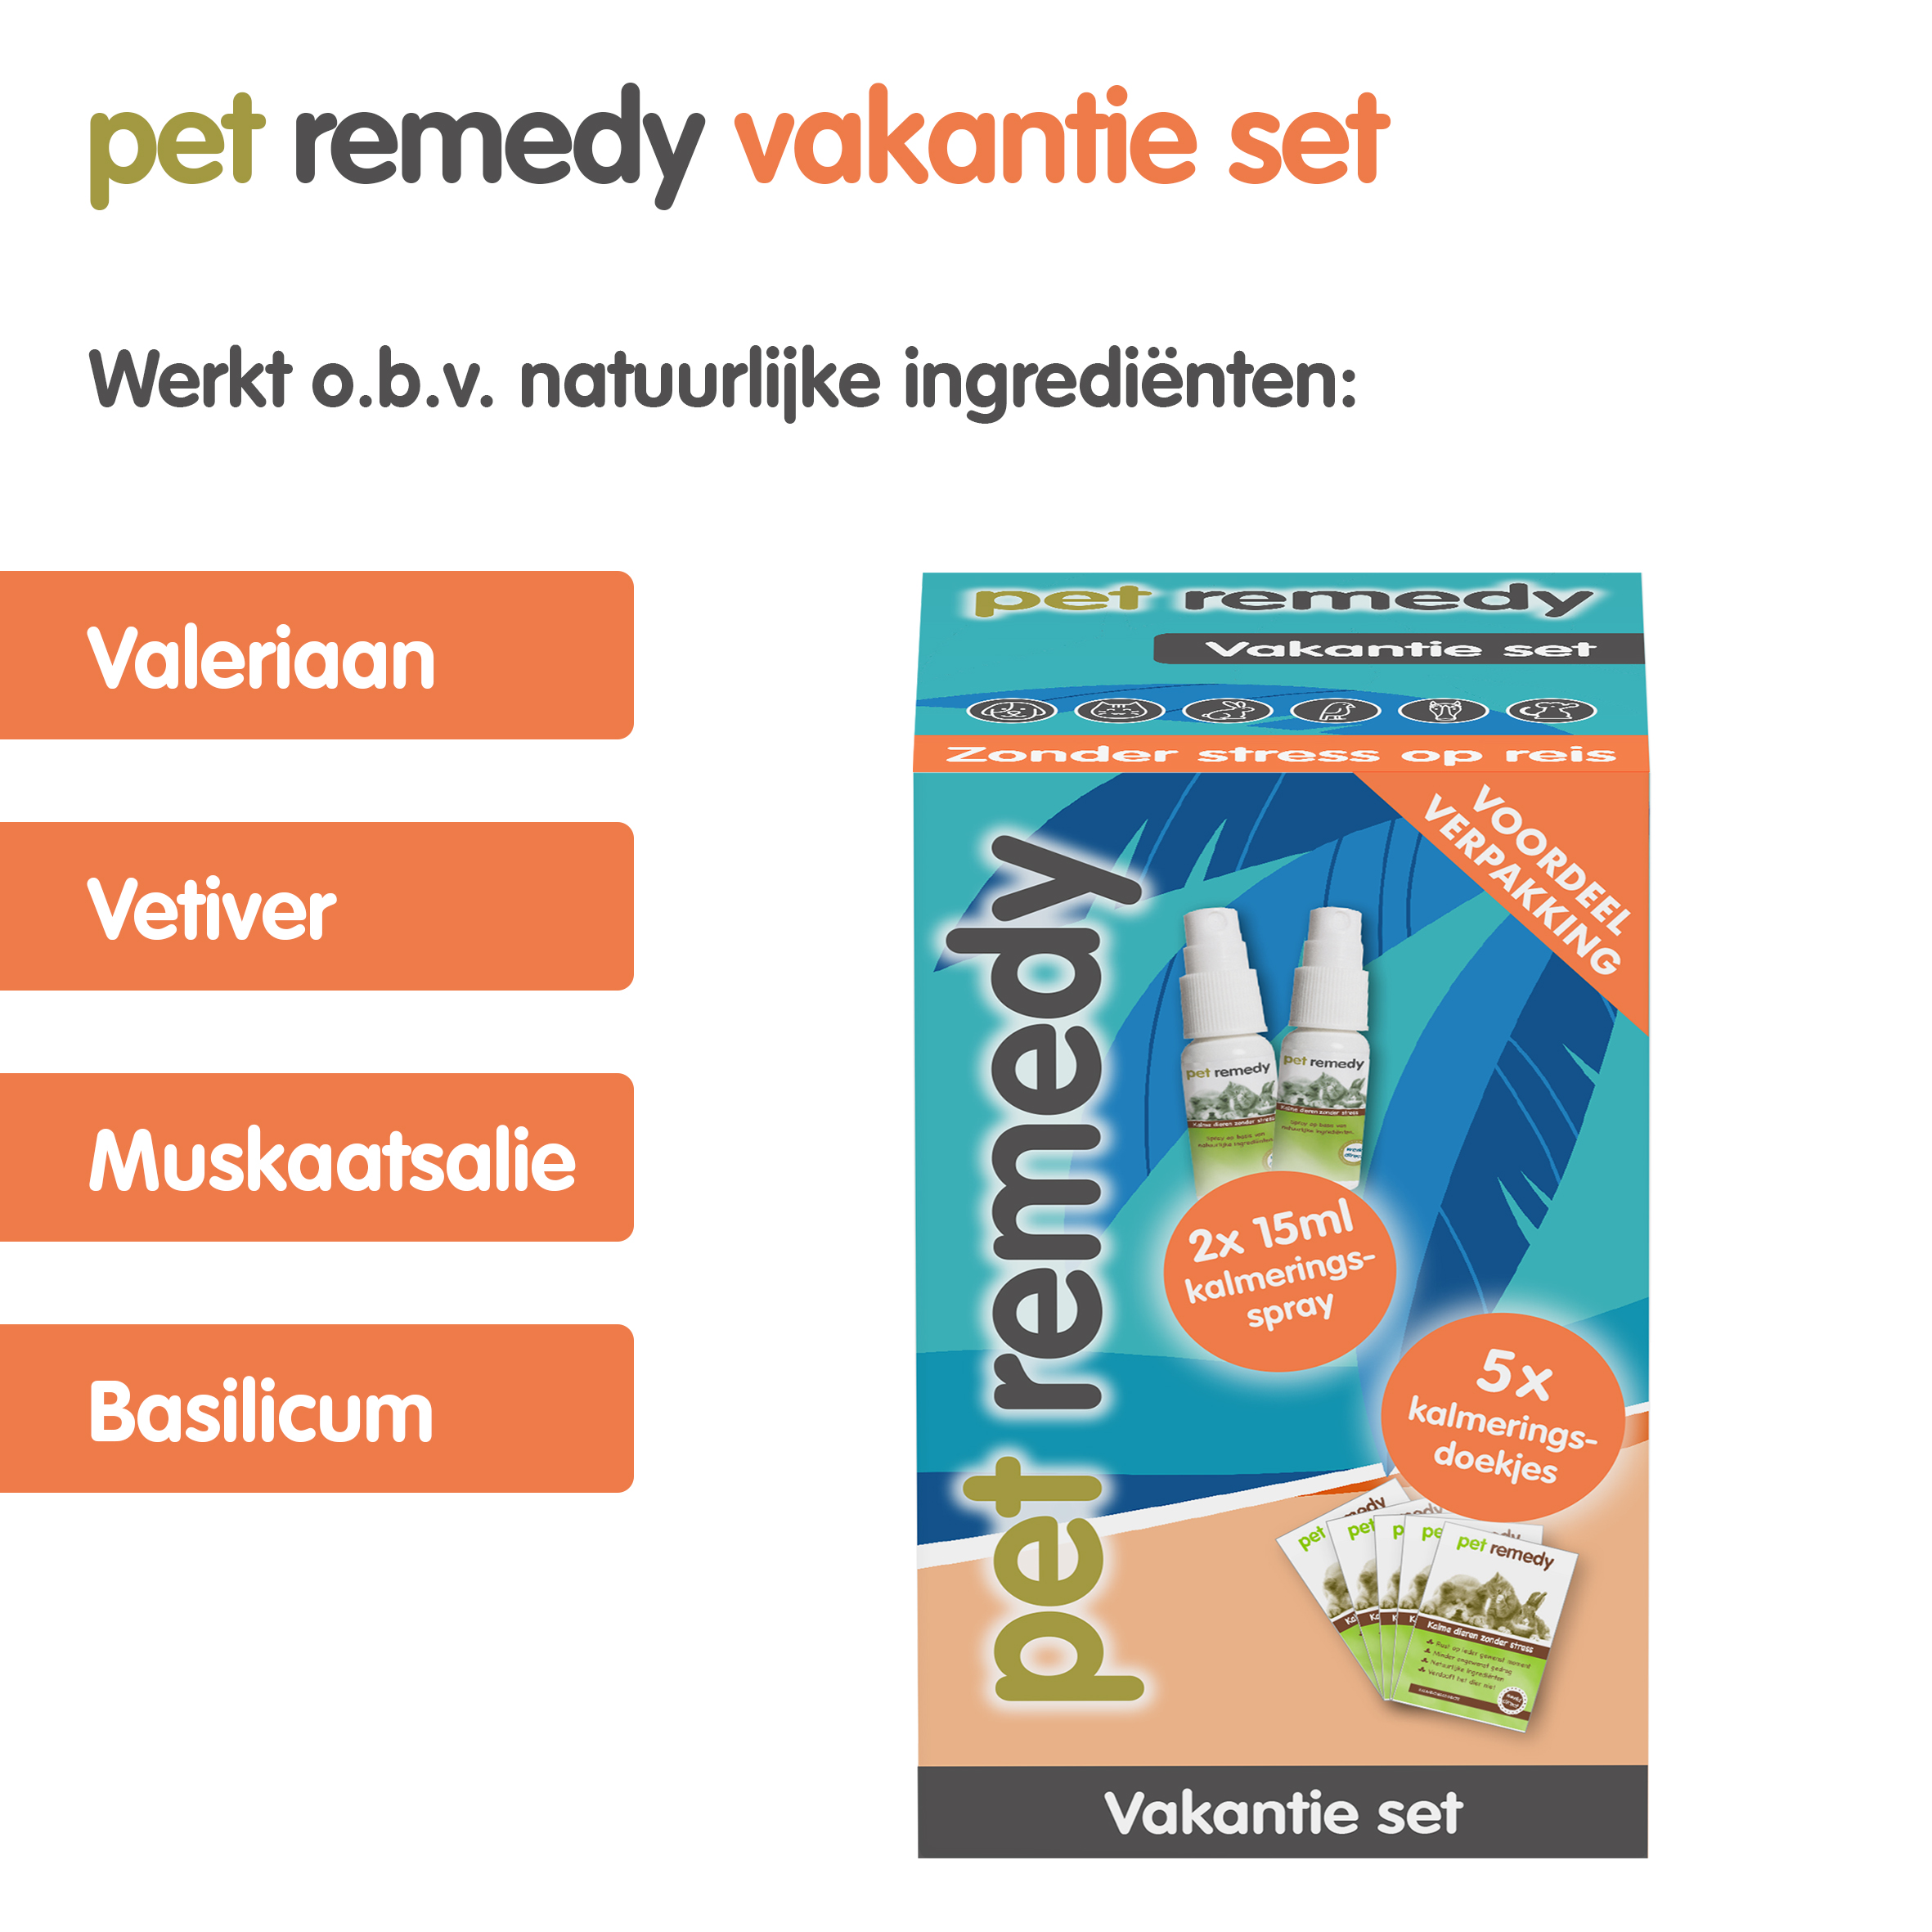 Pet Remedy Vakantie Set tegen stress bij huisdieren - Emax.nl